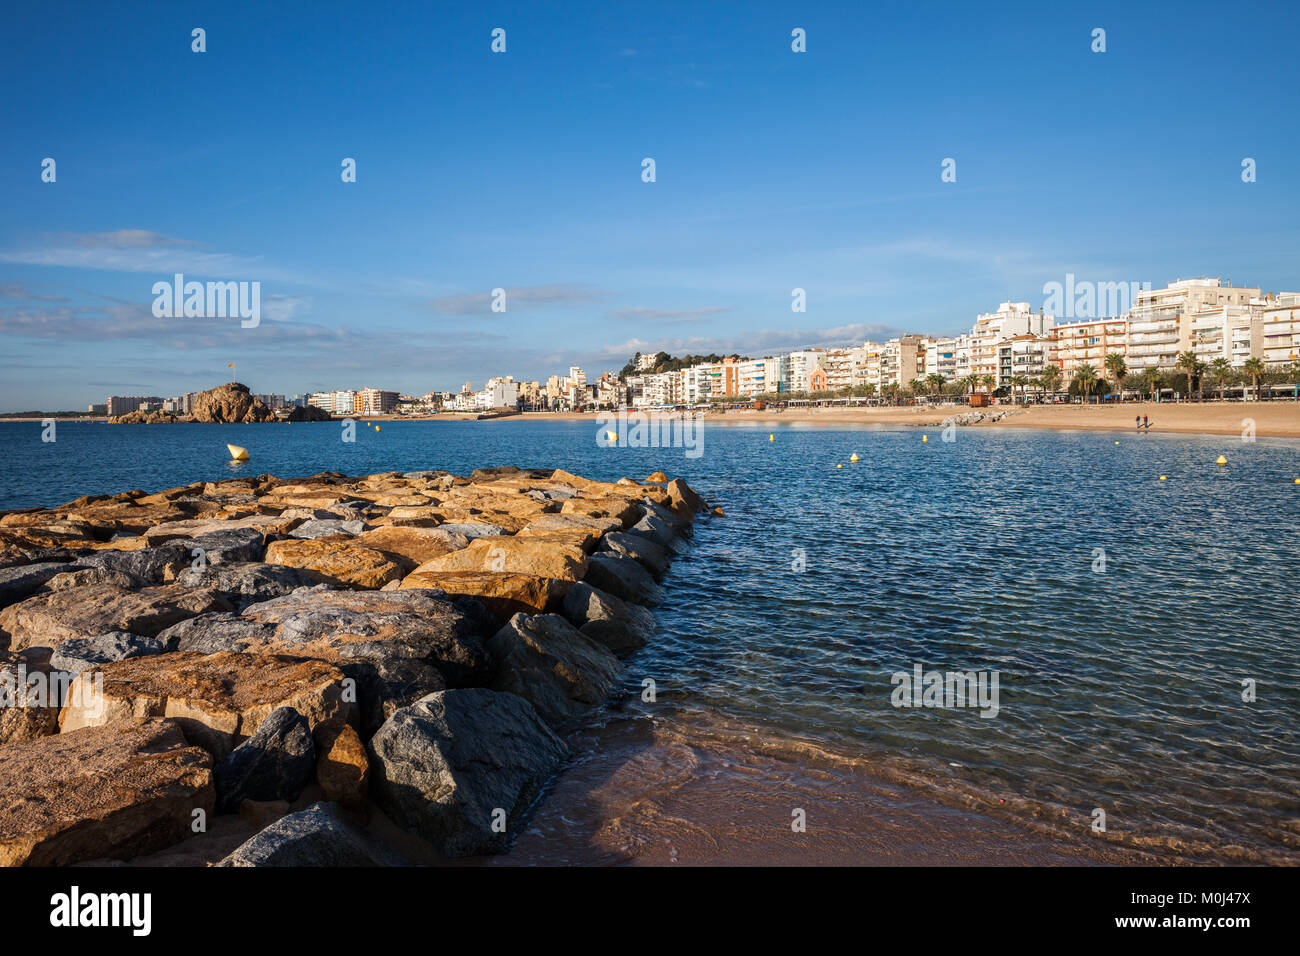 Blanes località turistica sulla Costa Brava in Spagna, in Catalogna, in massi di scogliera sul mare Mediterraneo e sullo skyline della città. Foto Stock